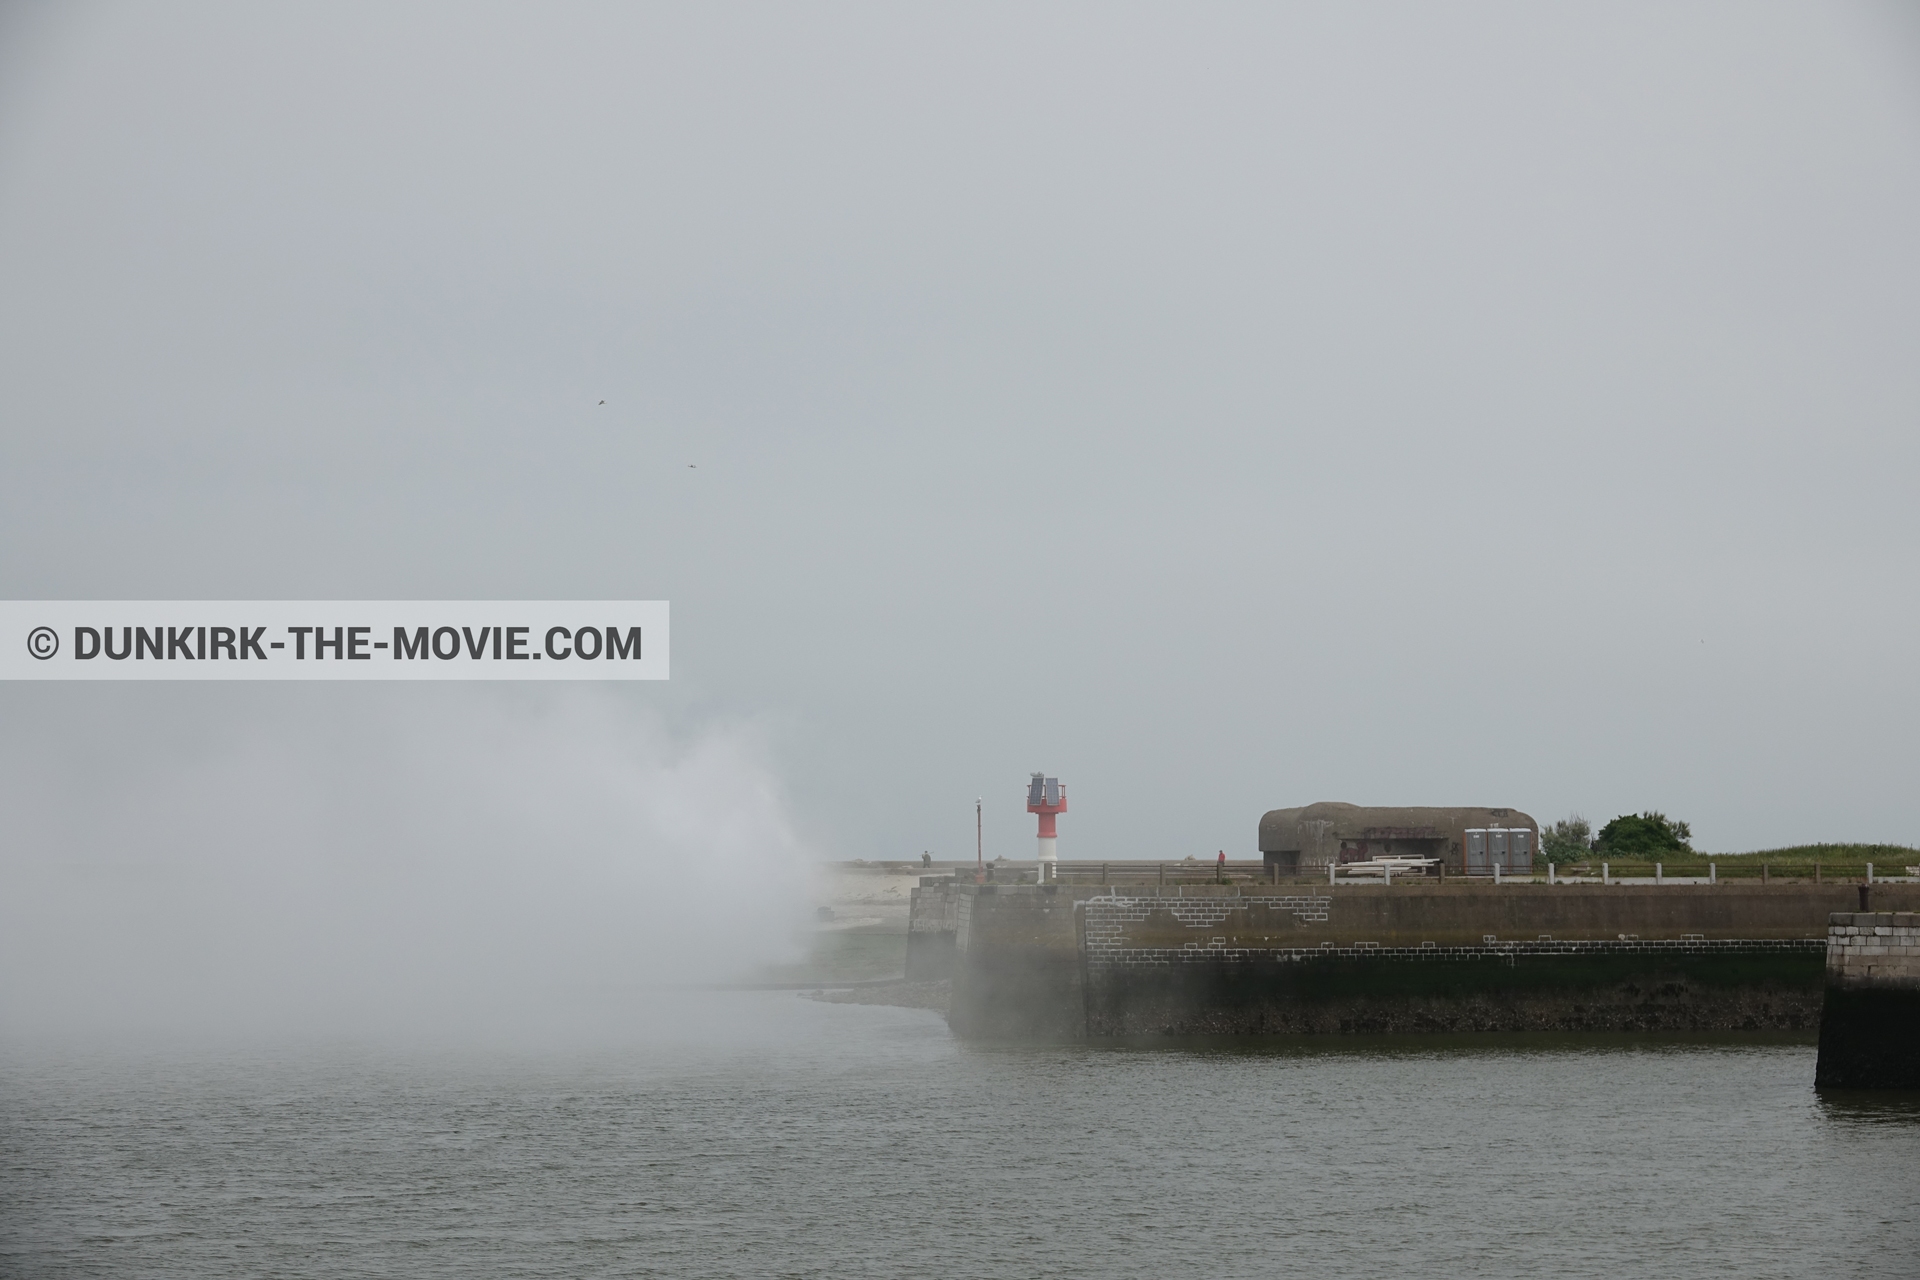 Fotos con humo blanco, muelle del ESTE,  durante el rodaje de la película Dunkerque de Nolan